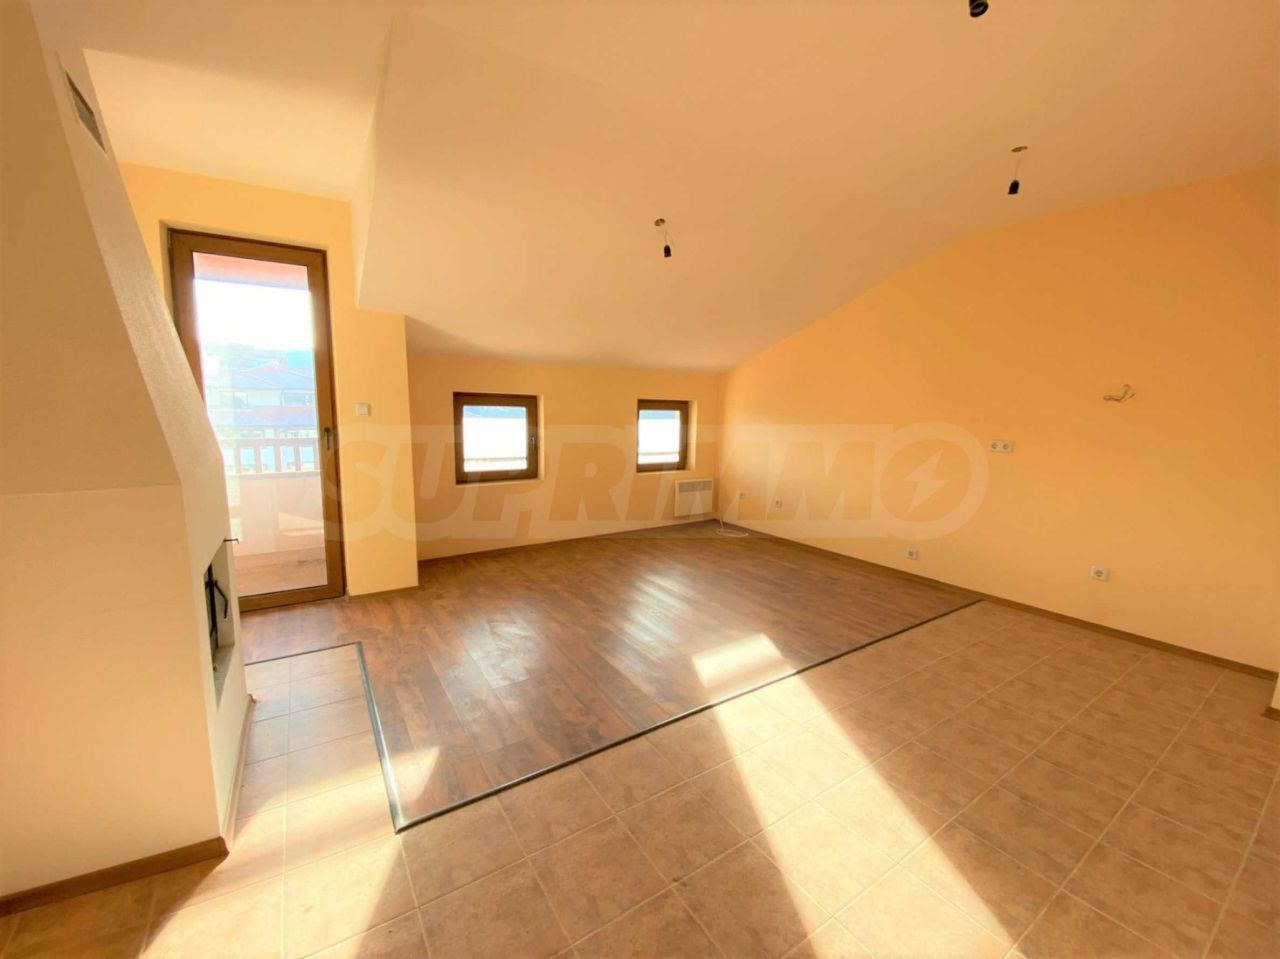 Apartment in Bansko, Bulgarien, 67.35 m2 - Foto 1